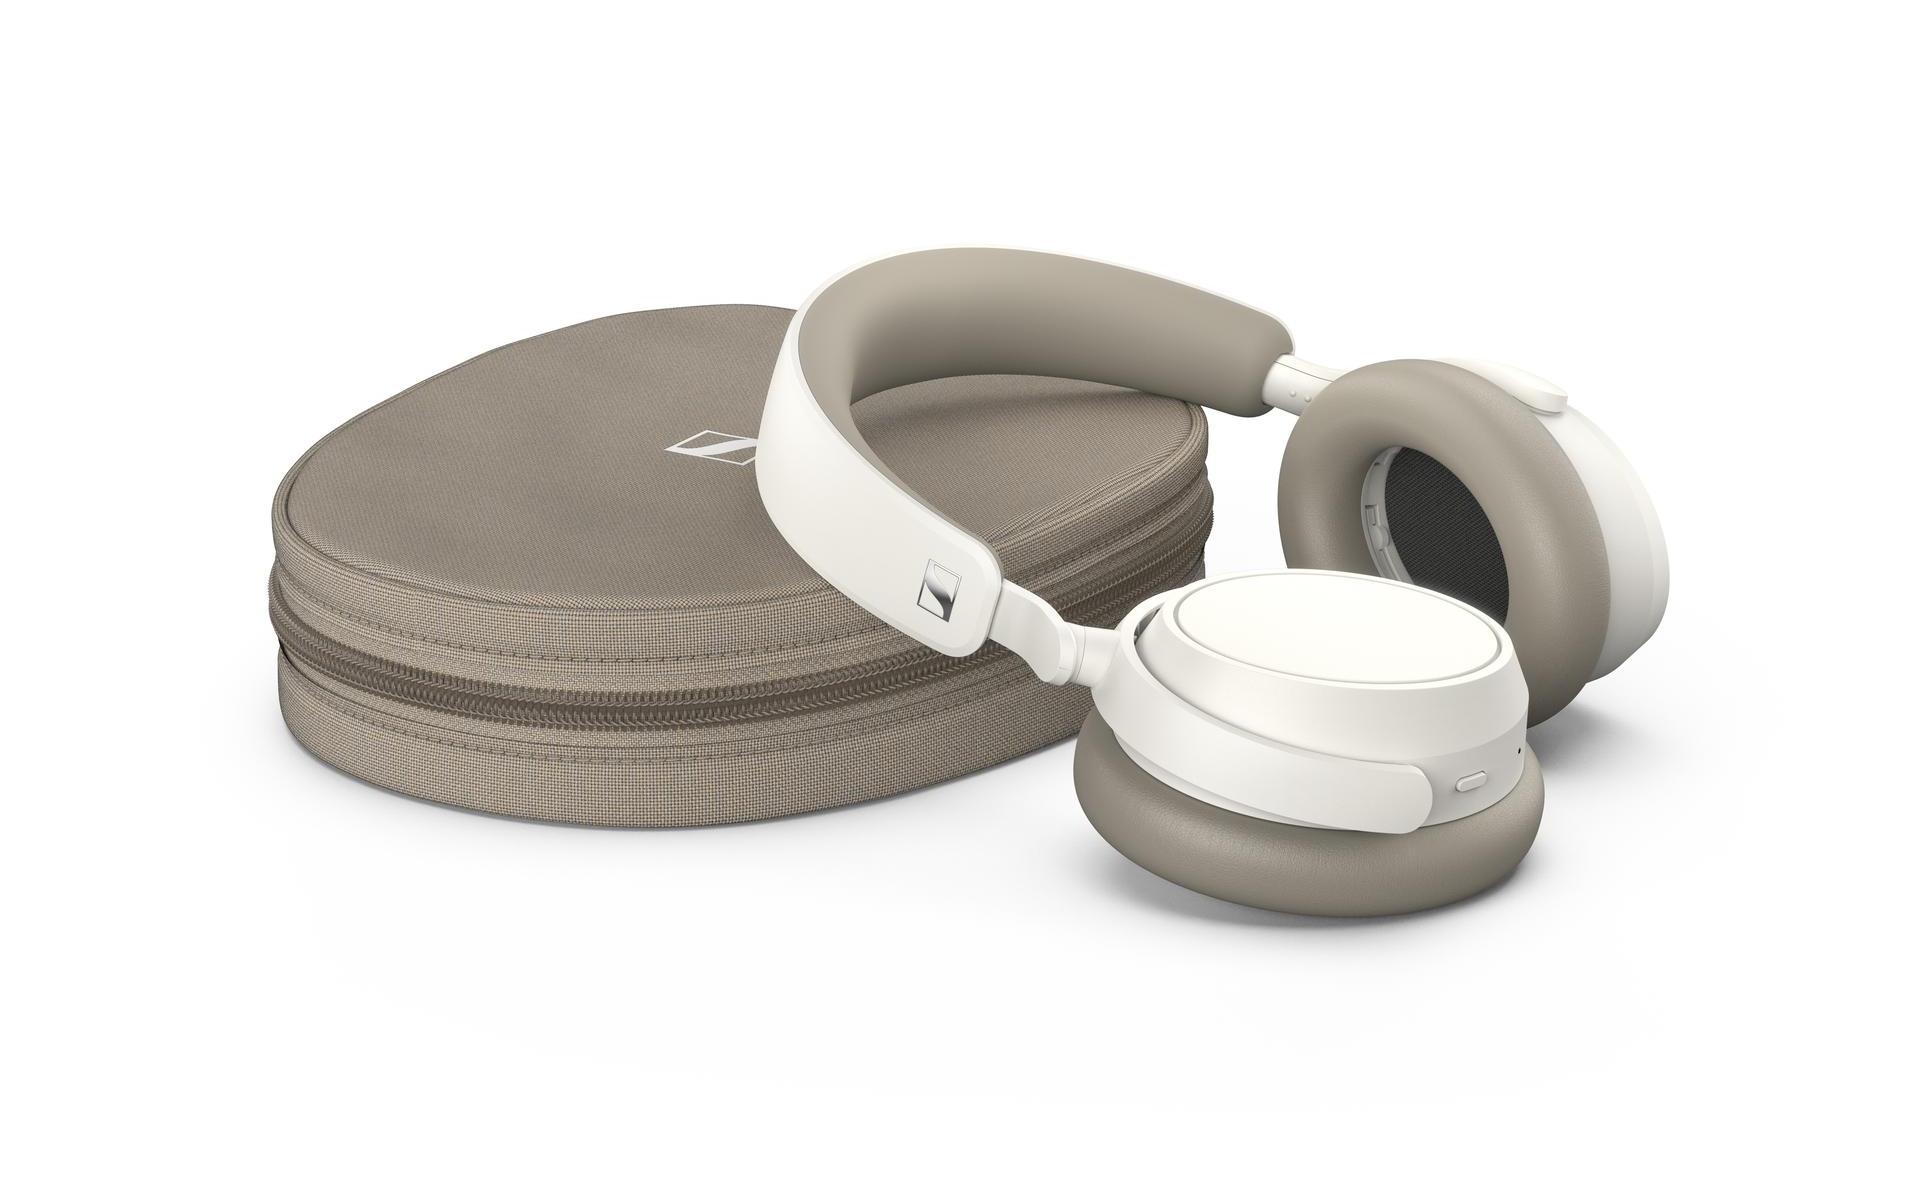 ACCENTUM Plus Wireless leveres med USB-C-kabel, hodetelefonkabel (3,5 mm plugg) og oppbevaringspose med glidelås.